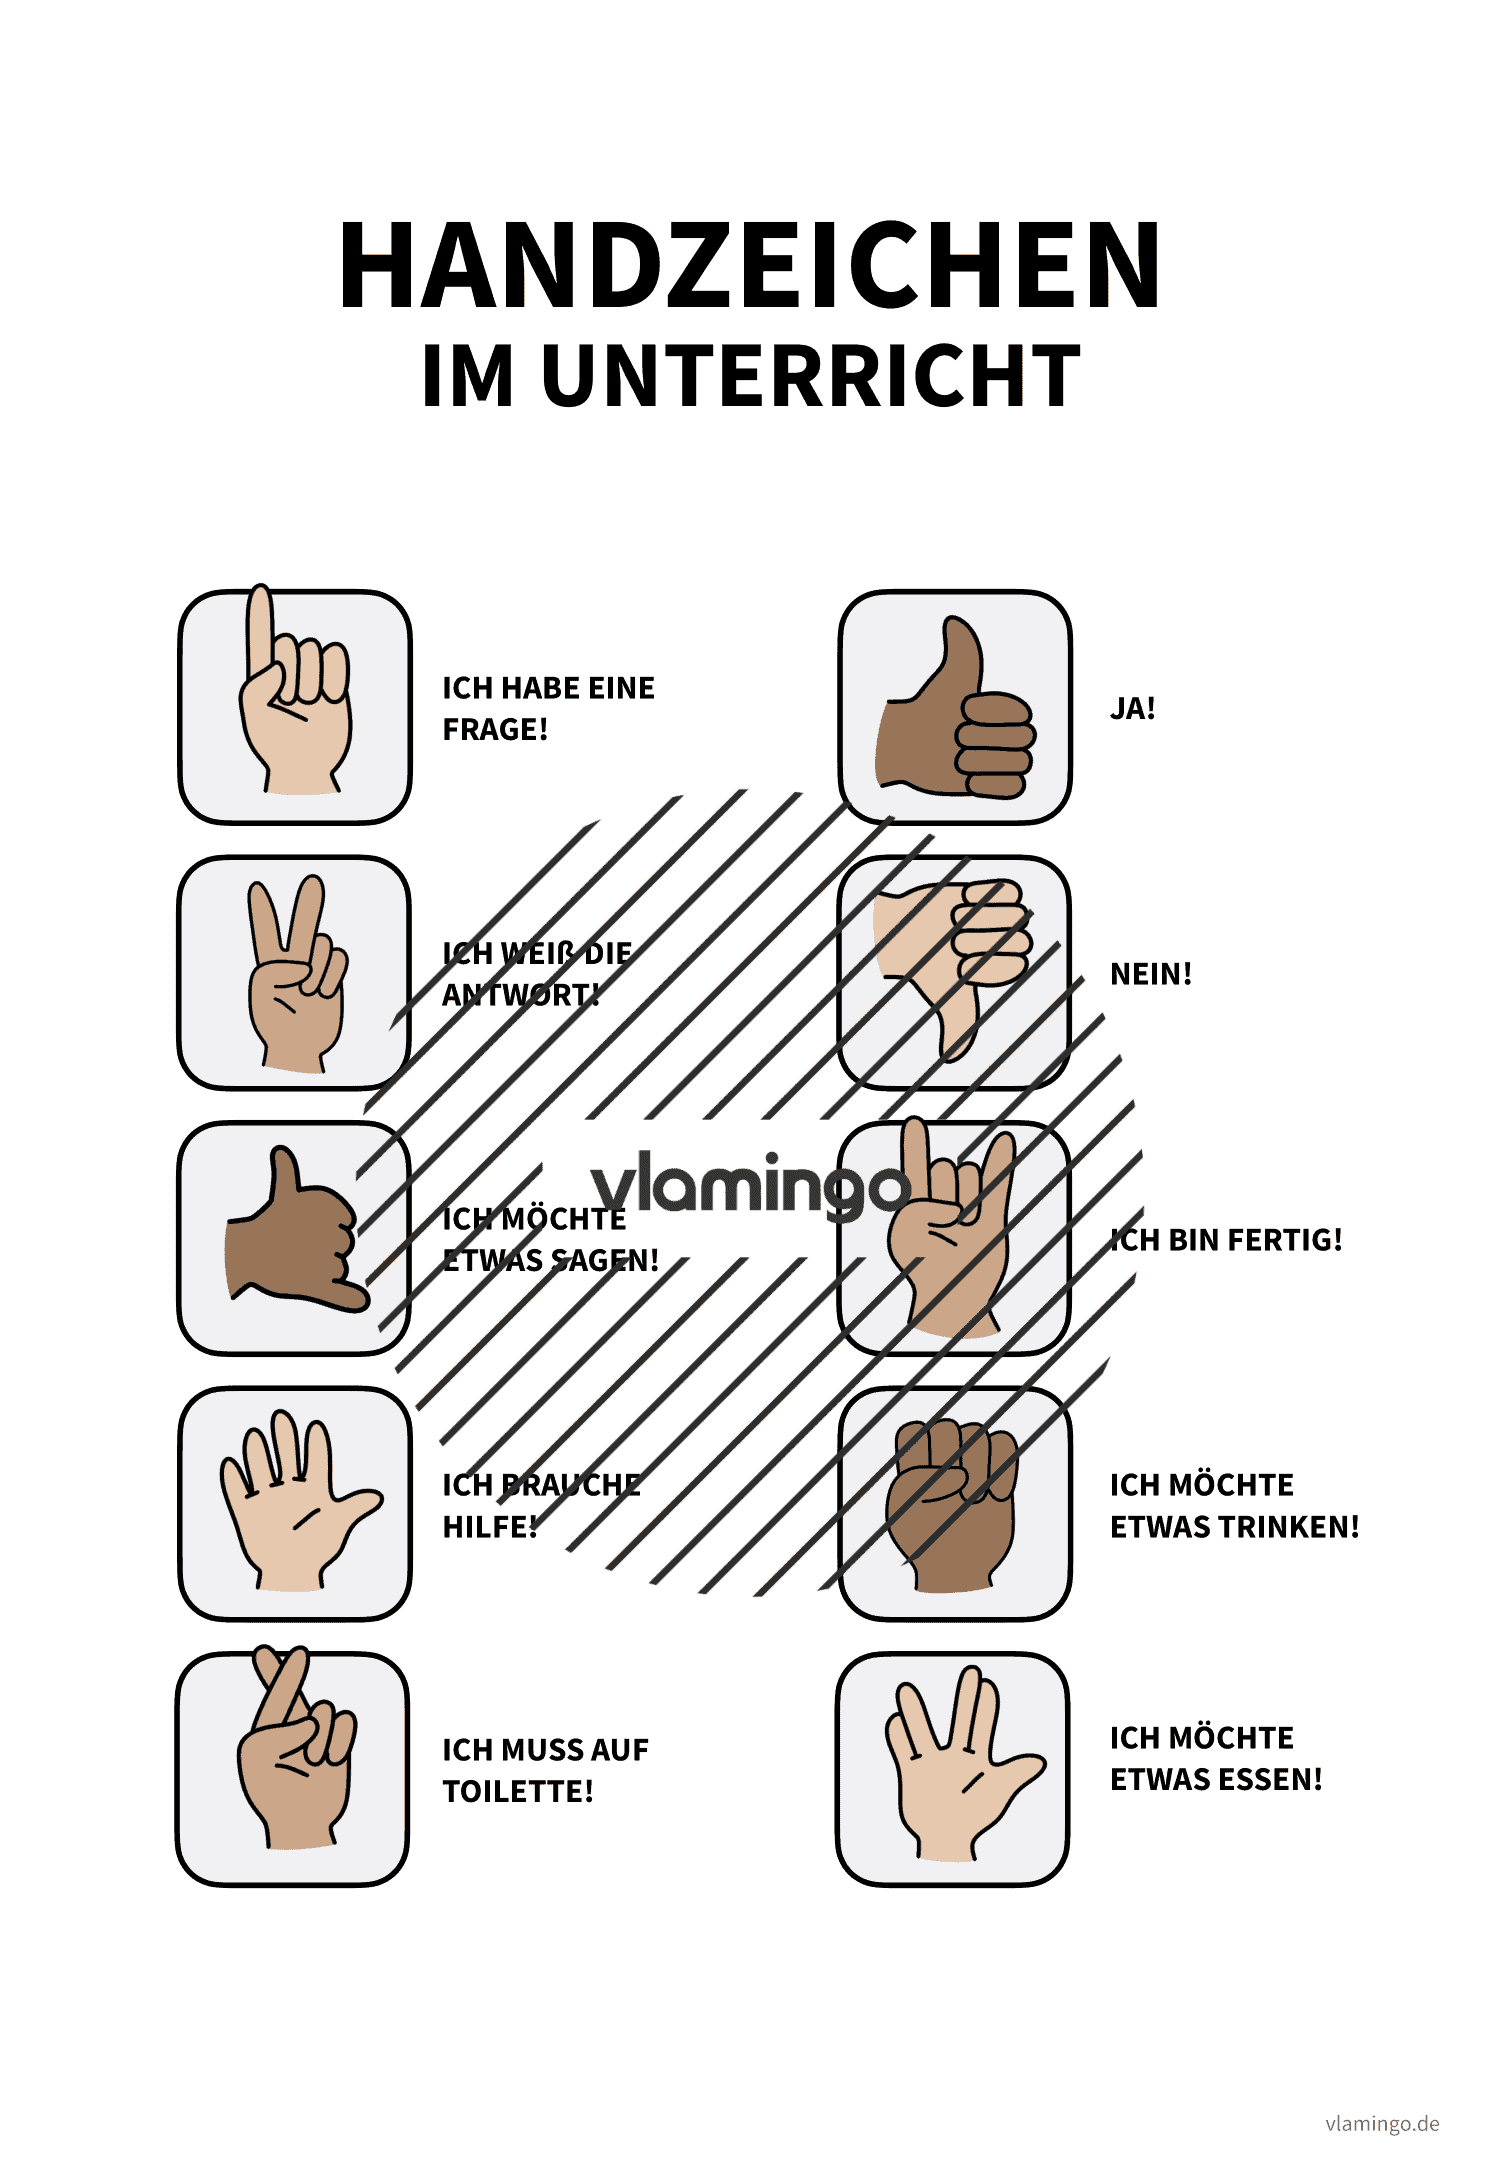 Handzeichen im Unterricht - Plakat